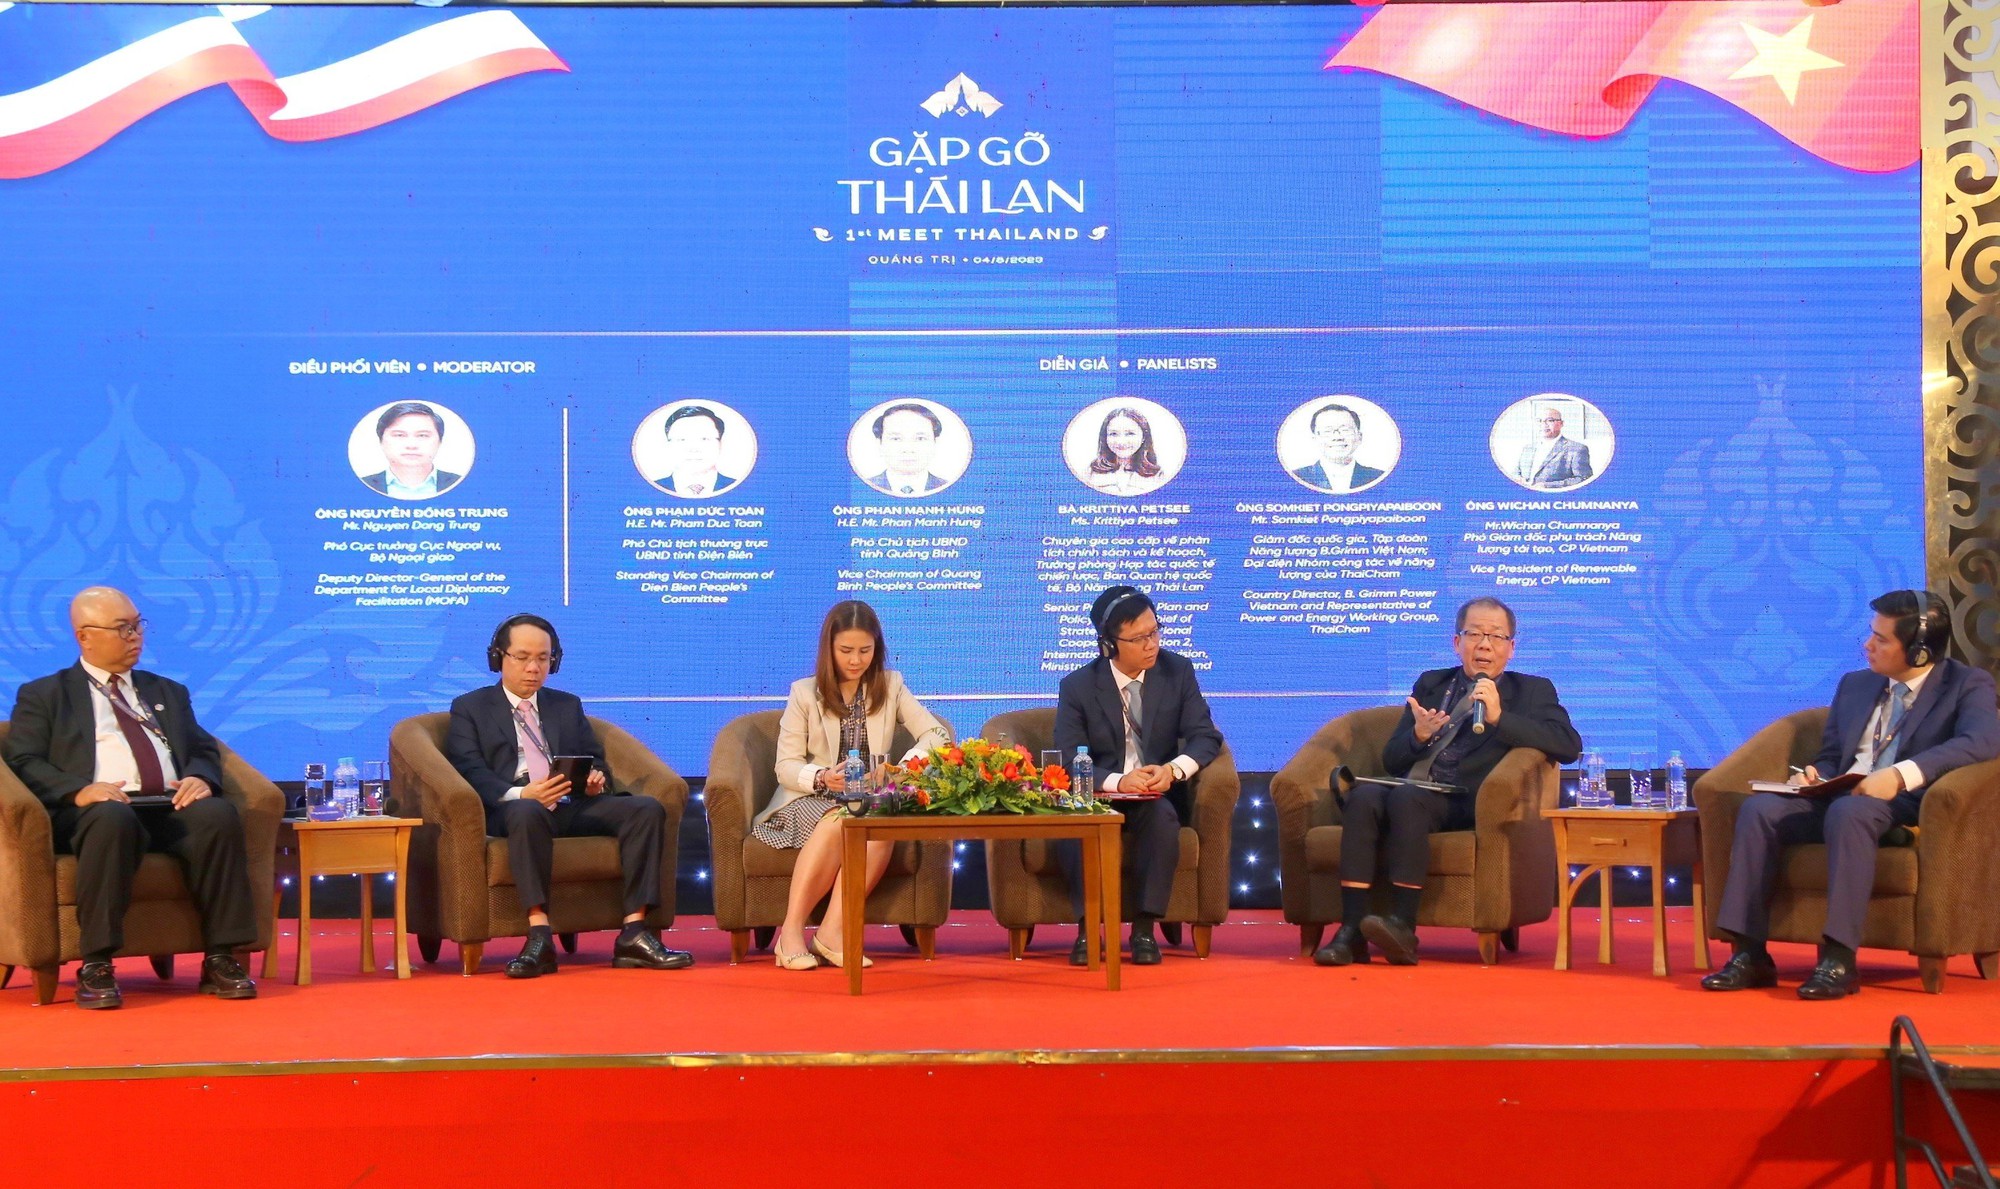 เสริมสร้างการส่งเสริมการลงทุนและความร่วมมือทางการค้าระหว่างเวียดนามและไทย - ภาพที่ 2